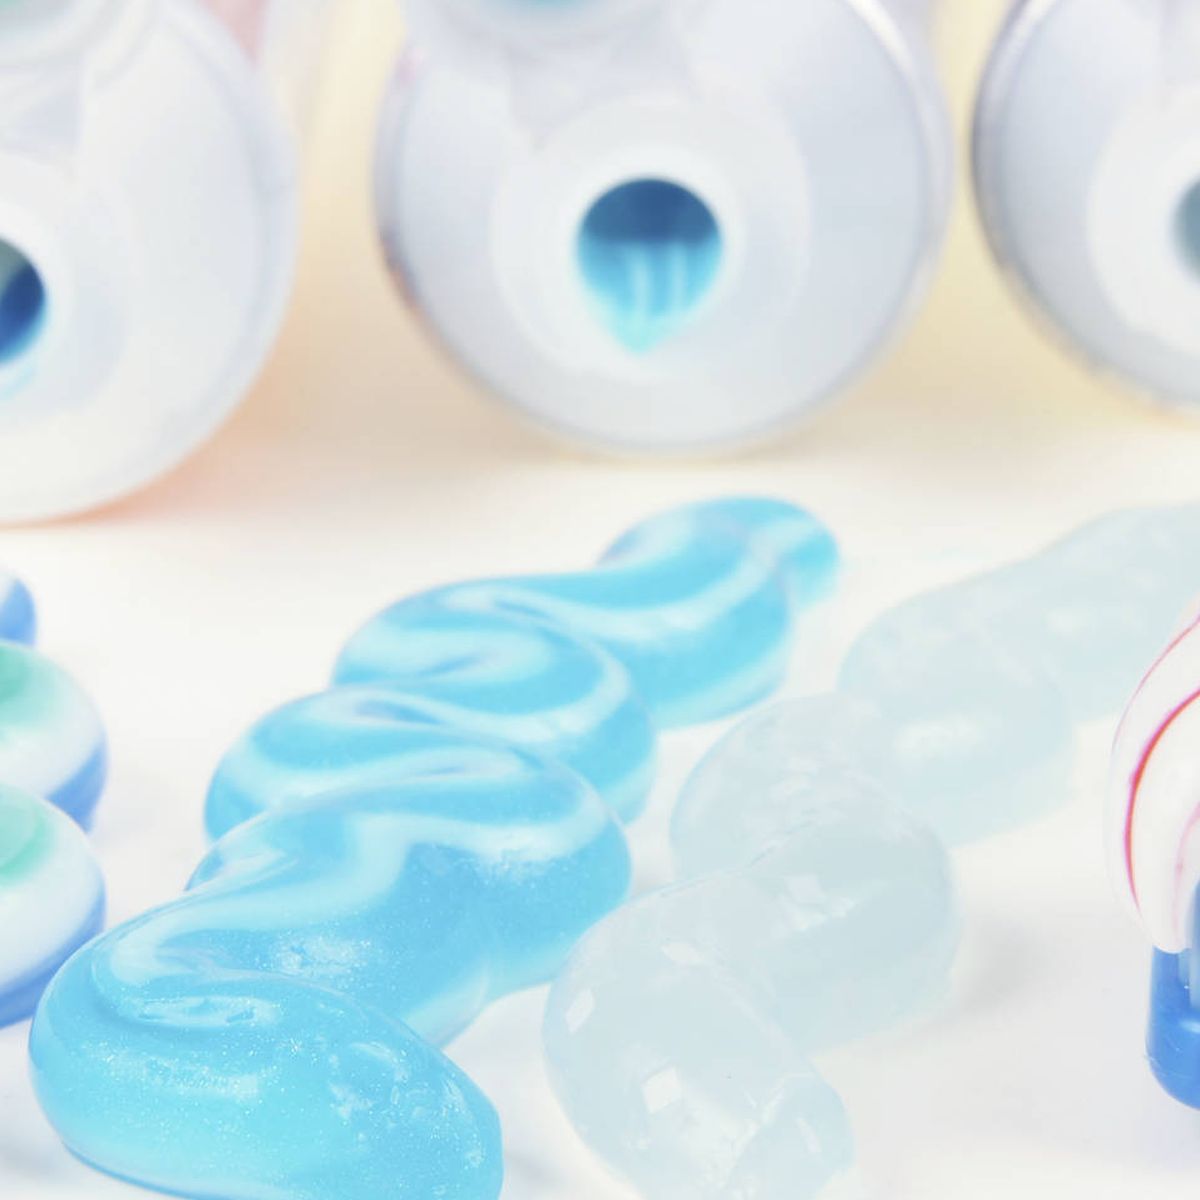 Equipo de juegos Intenso Perceptivo La pasta de dientes contiene ingredientes potencialmente tóxicos para la  salud